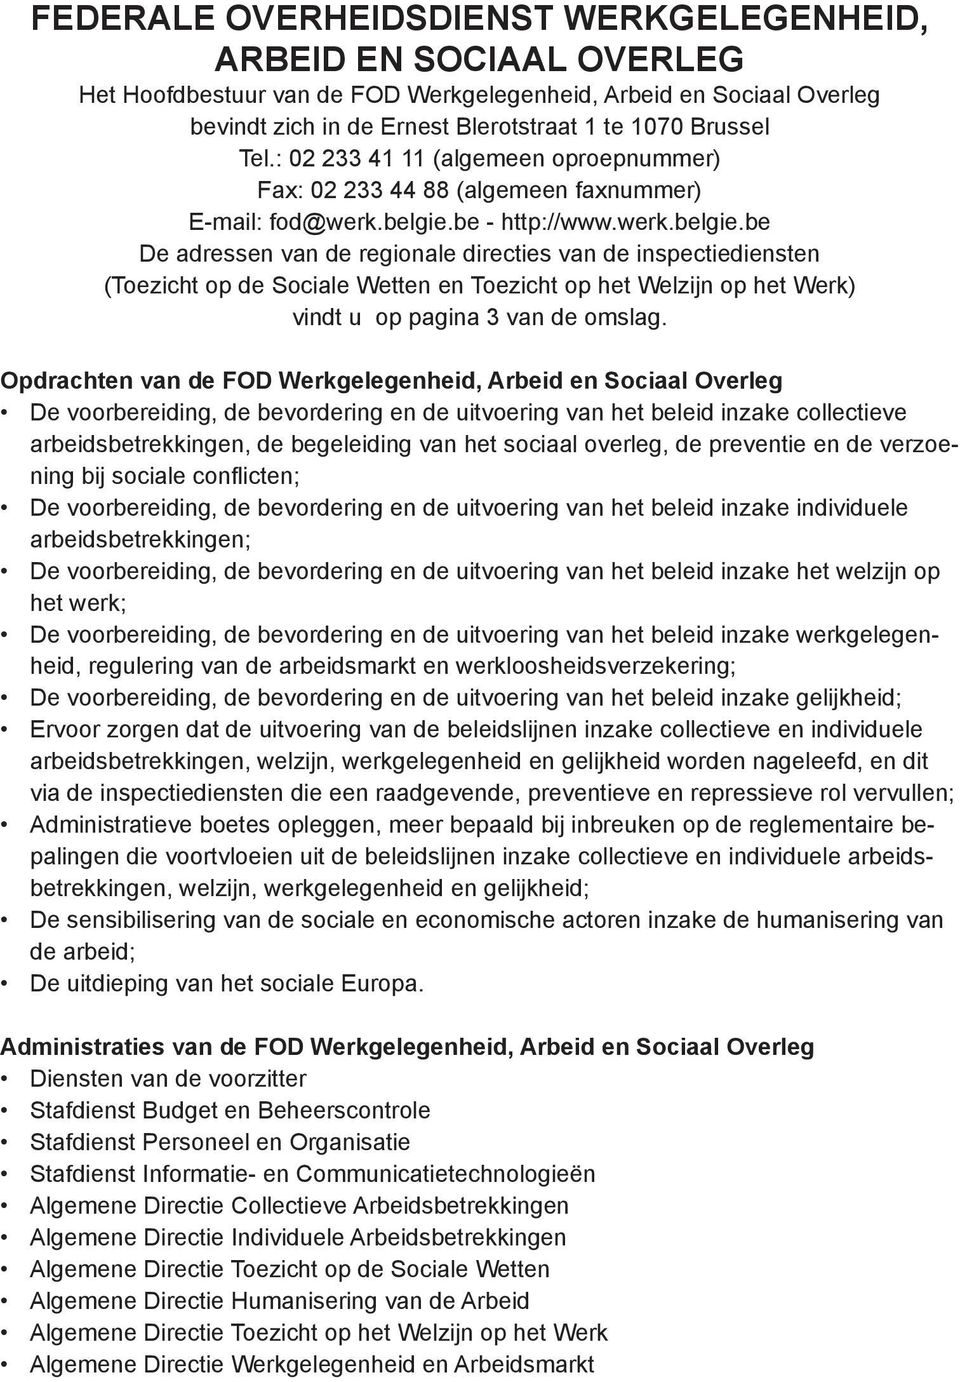 be - http://www.werk.belgie.be De adressen van de regionale directies van de inspectiediensten (Toezicht op de Sociale Wetten en Toezicht op het Welzijn op het Werk) vindt u op pagina 3 van de omslag.